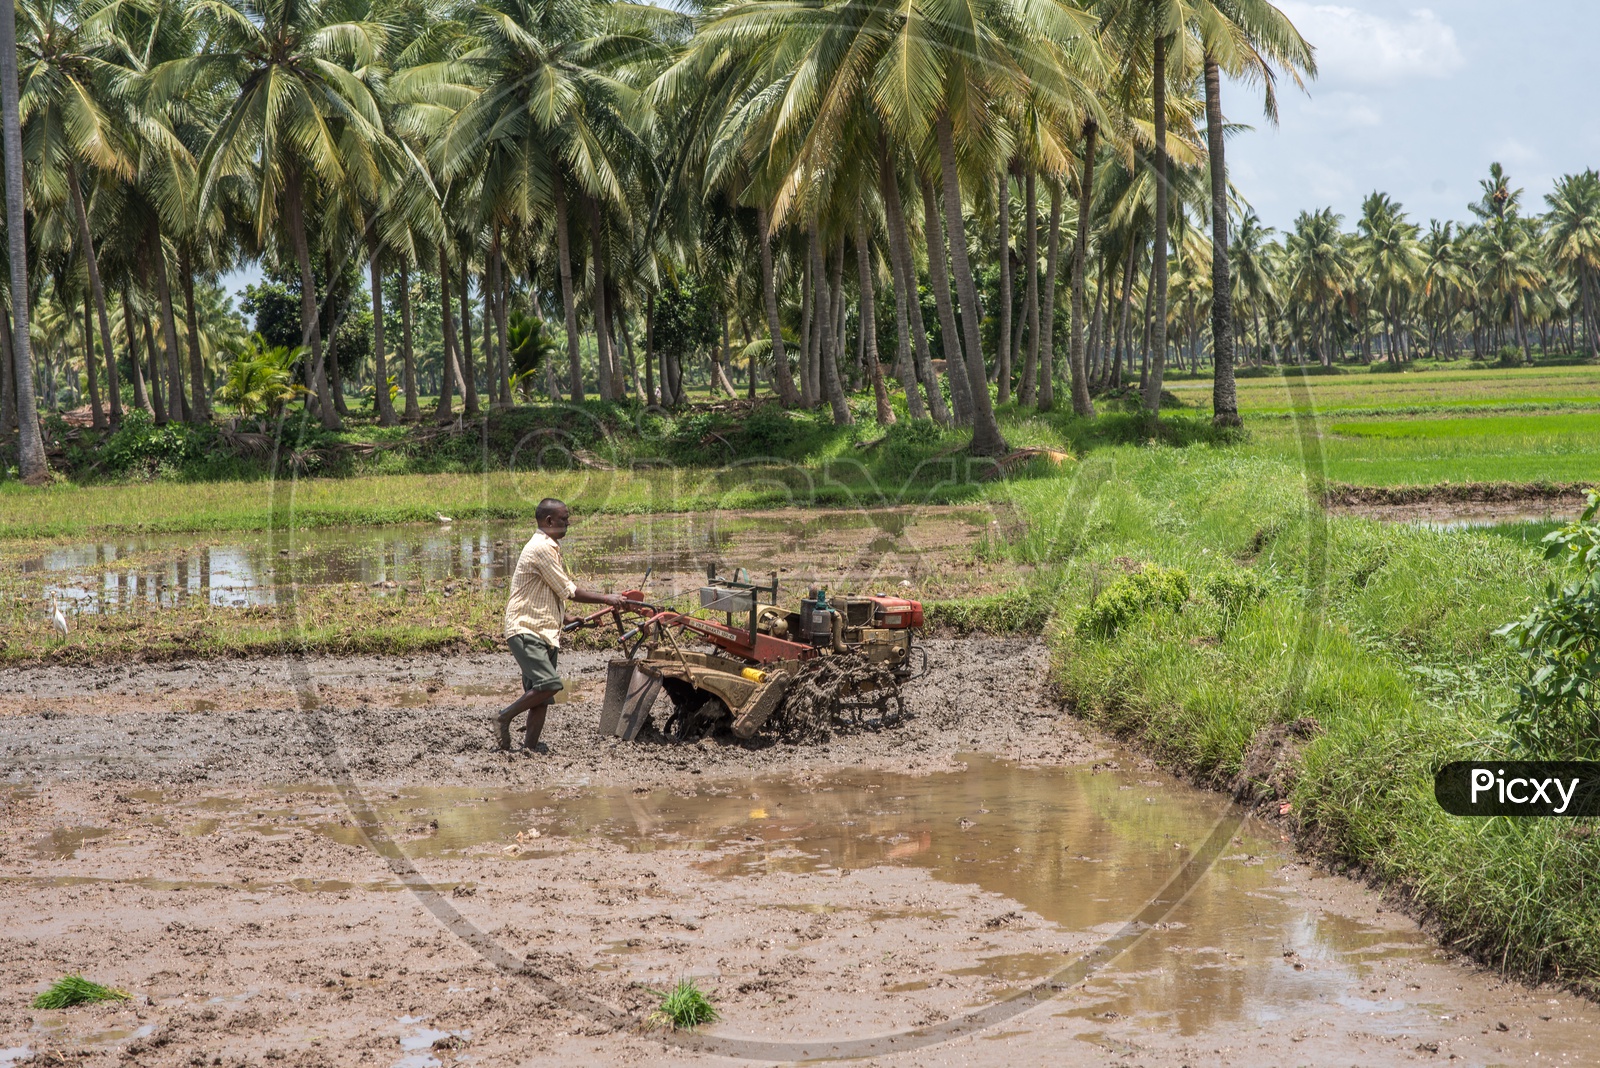 Farmers in paddy fields